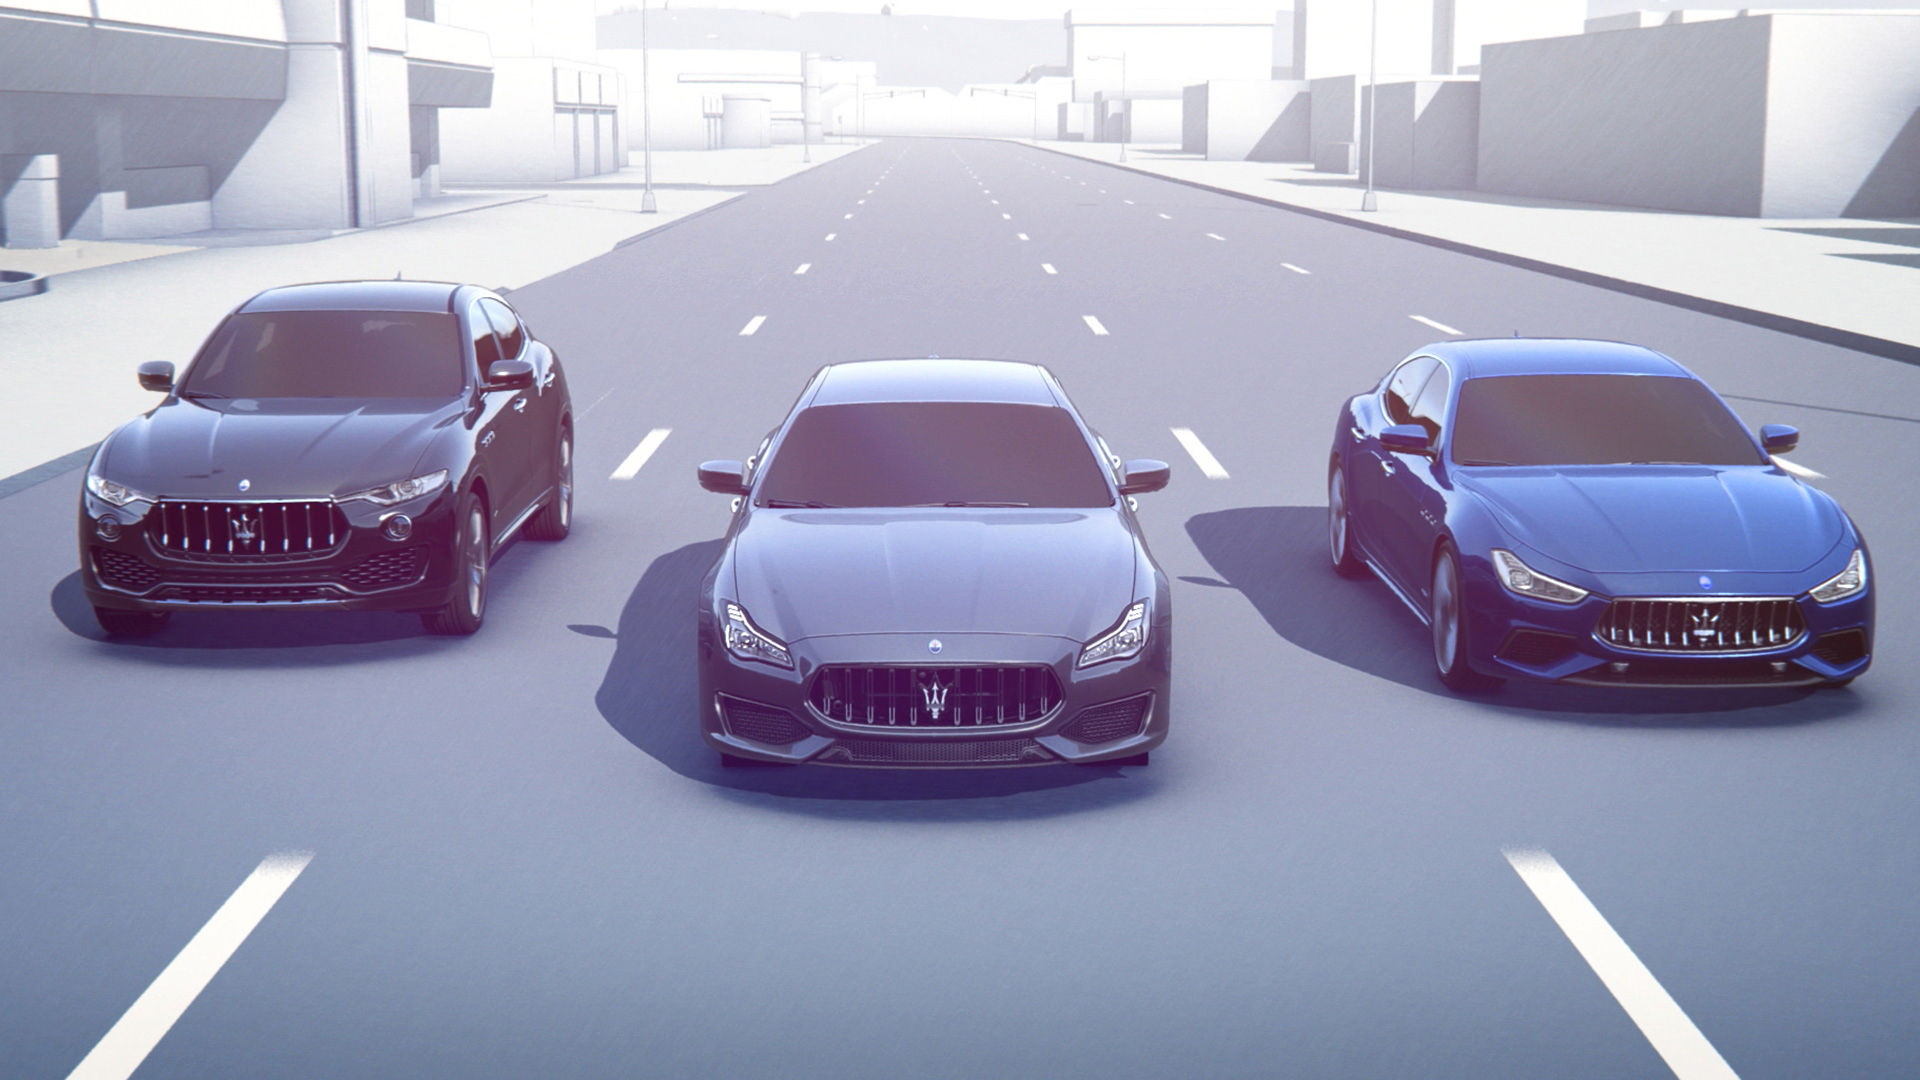 3 Vehículos Maserati con reconocimiento de señales de tráfico